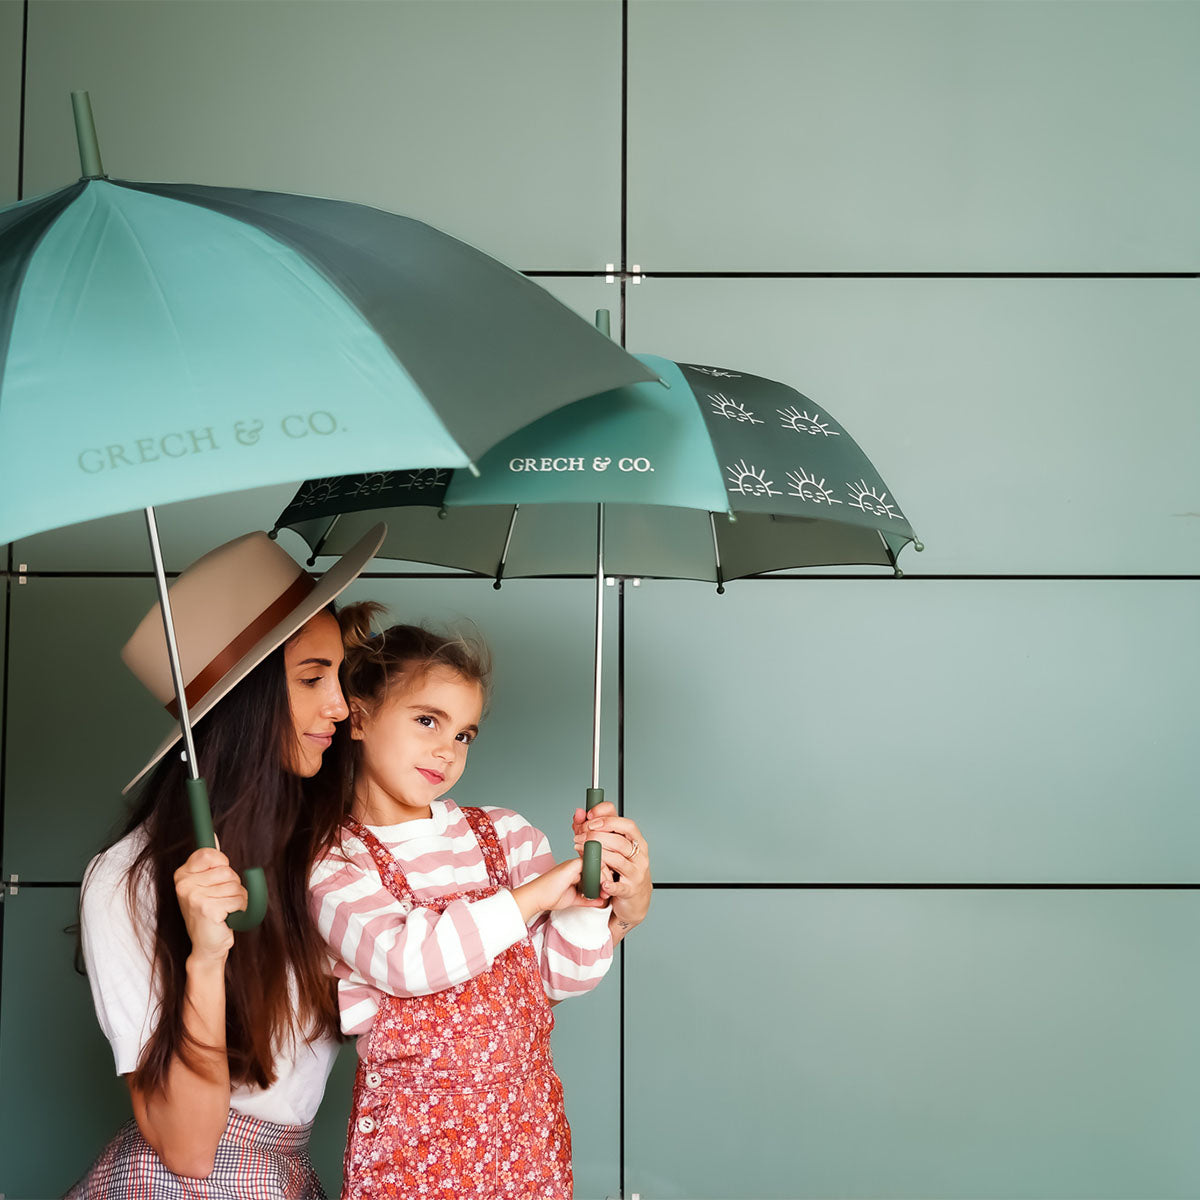 Bij regen én zonneschijn zorgt de duurzame Grech & co. paraplu kids orchard ervoor dat je stijlvol voor de dag komt. Leuk voor kinderen die willen matchen met hun grote broer/zus, mama of papa. VanZus